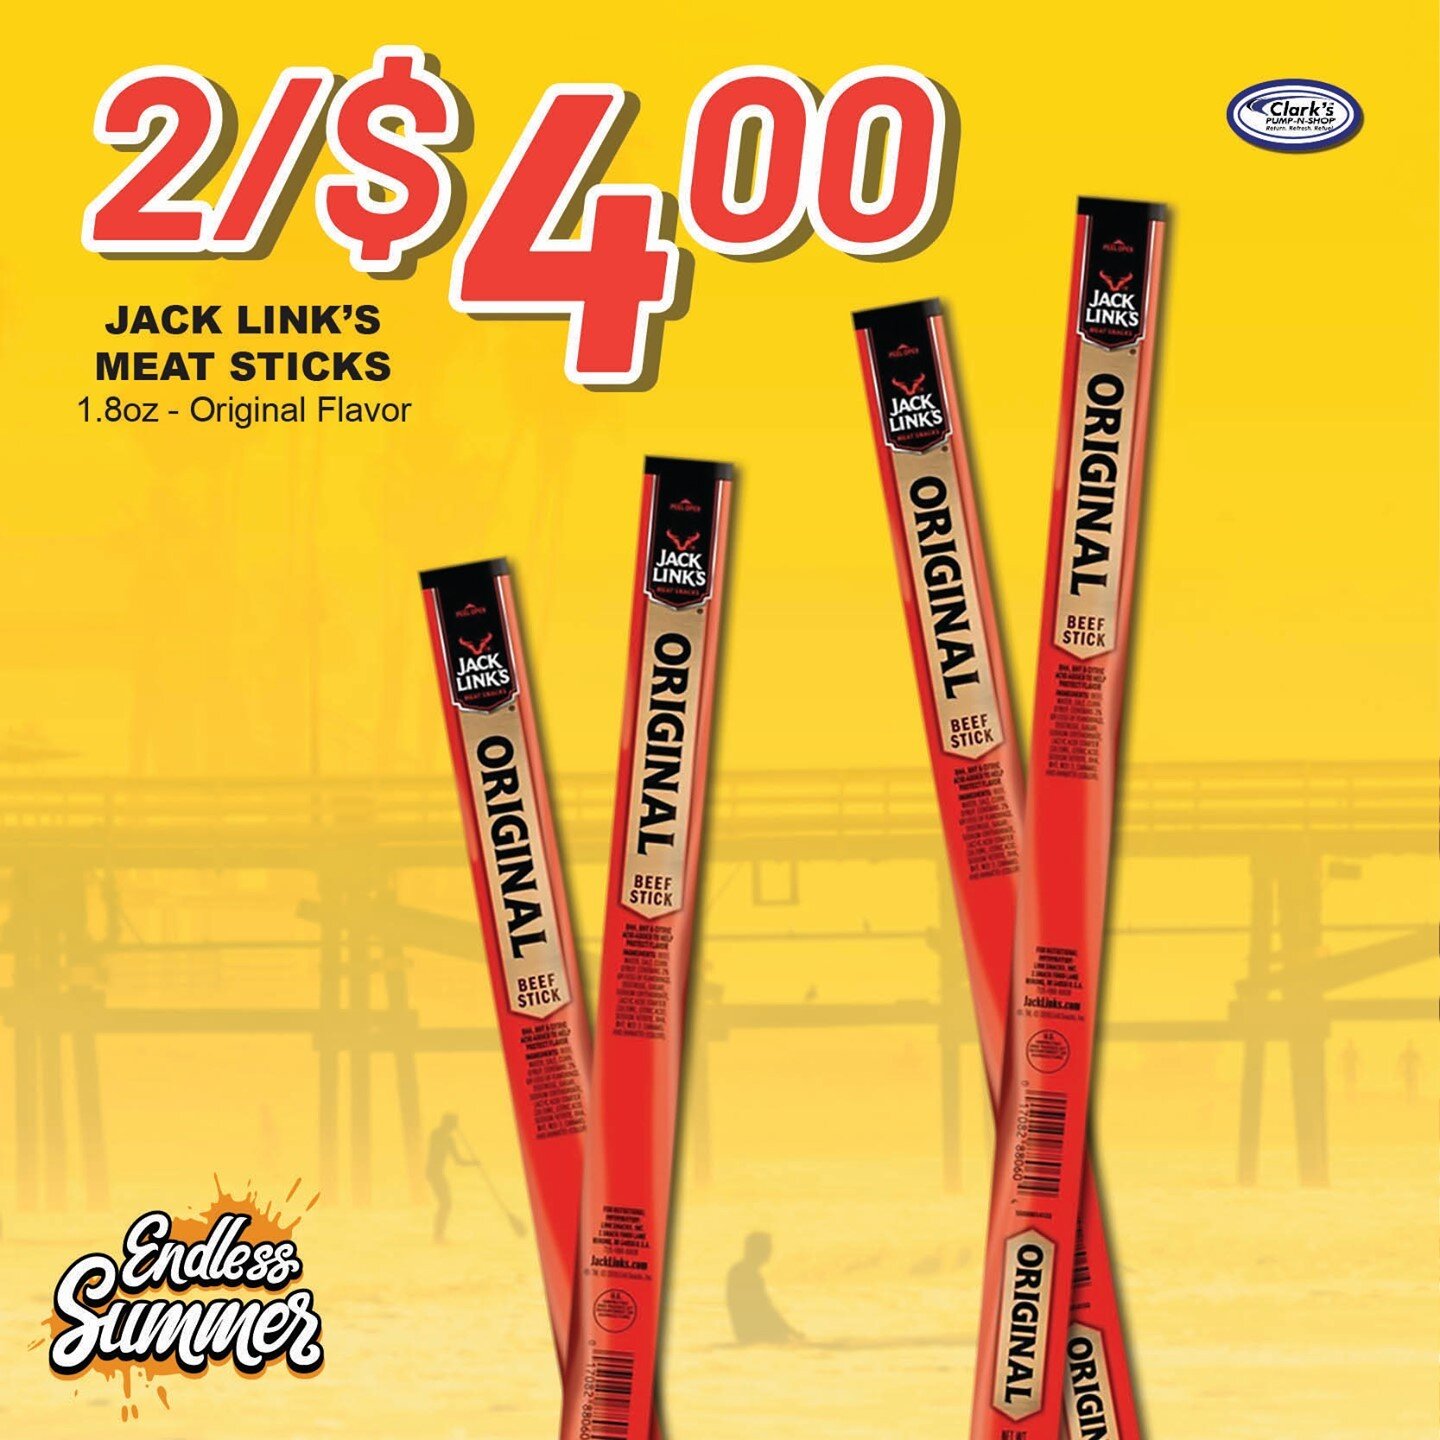 Jack Link's Meat Snacks 1.8oz - Original Flavor 2 for $4.00 #ReturnRefreshRefuel